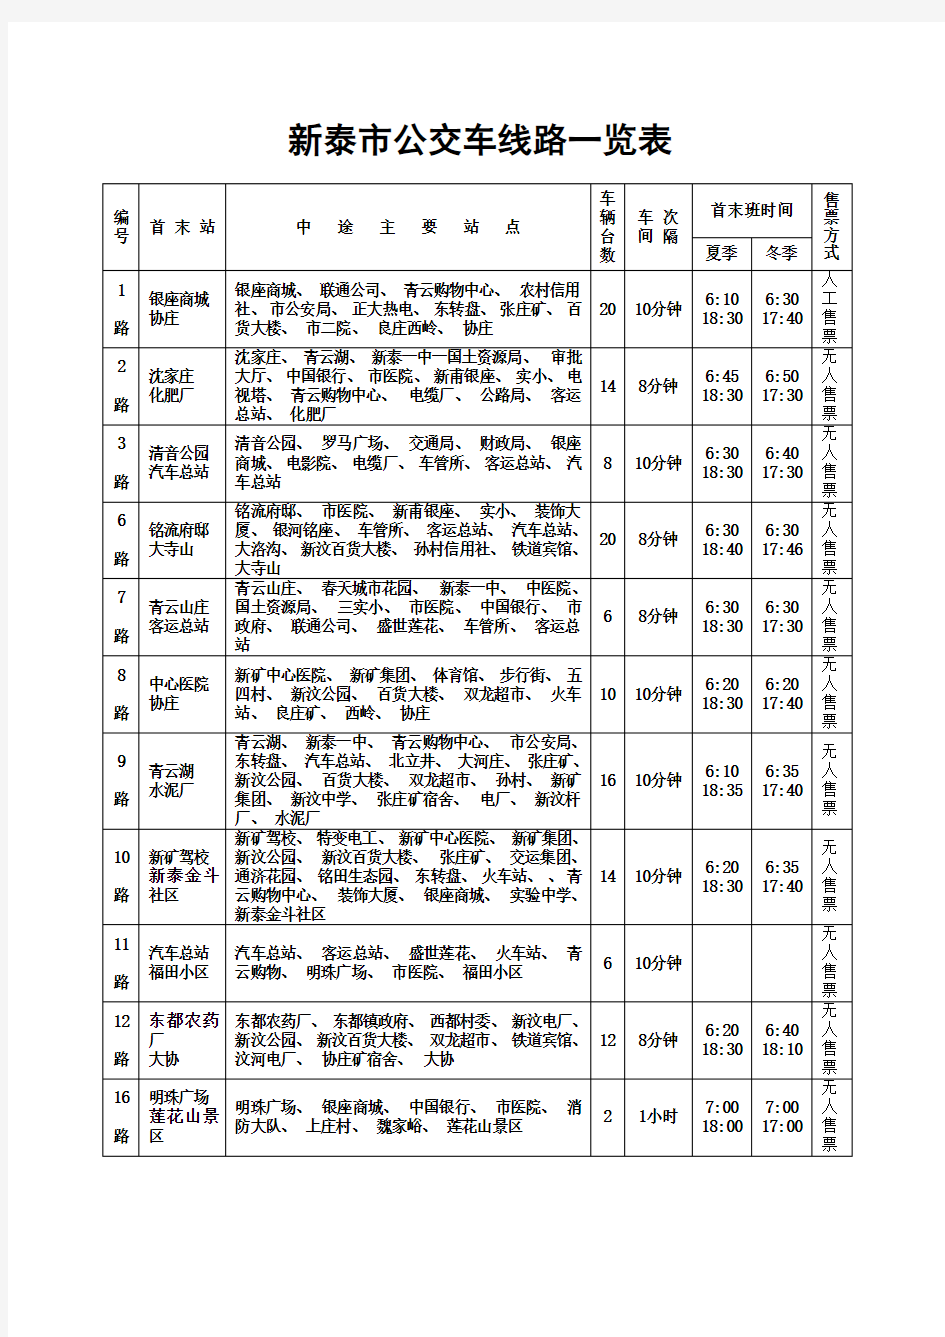 新泰市公交车线路一览表(11条线路)